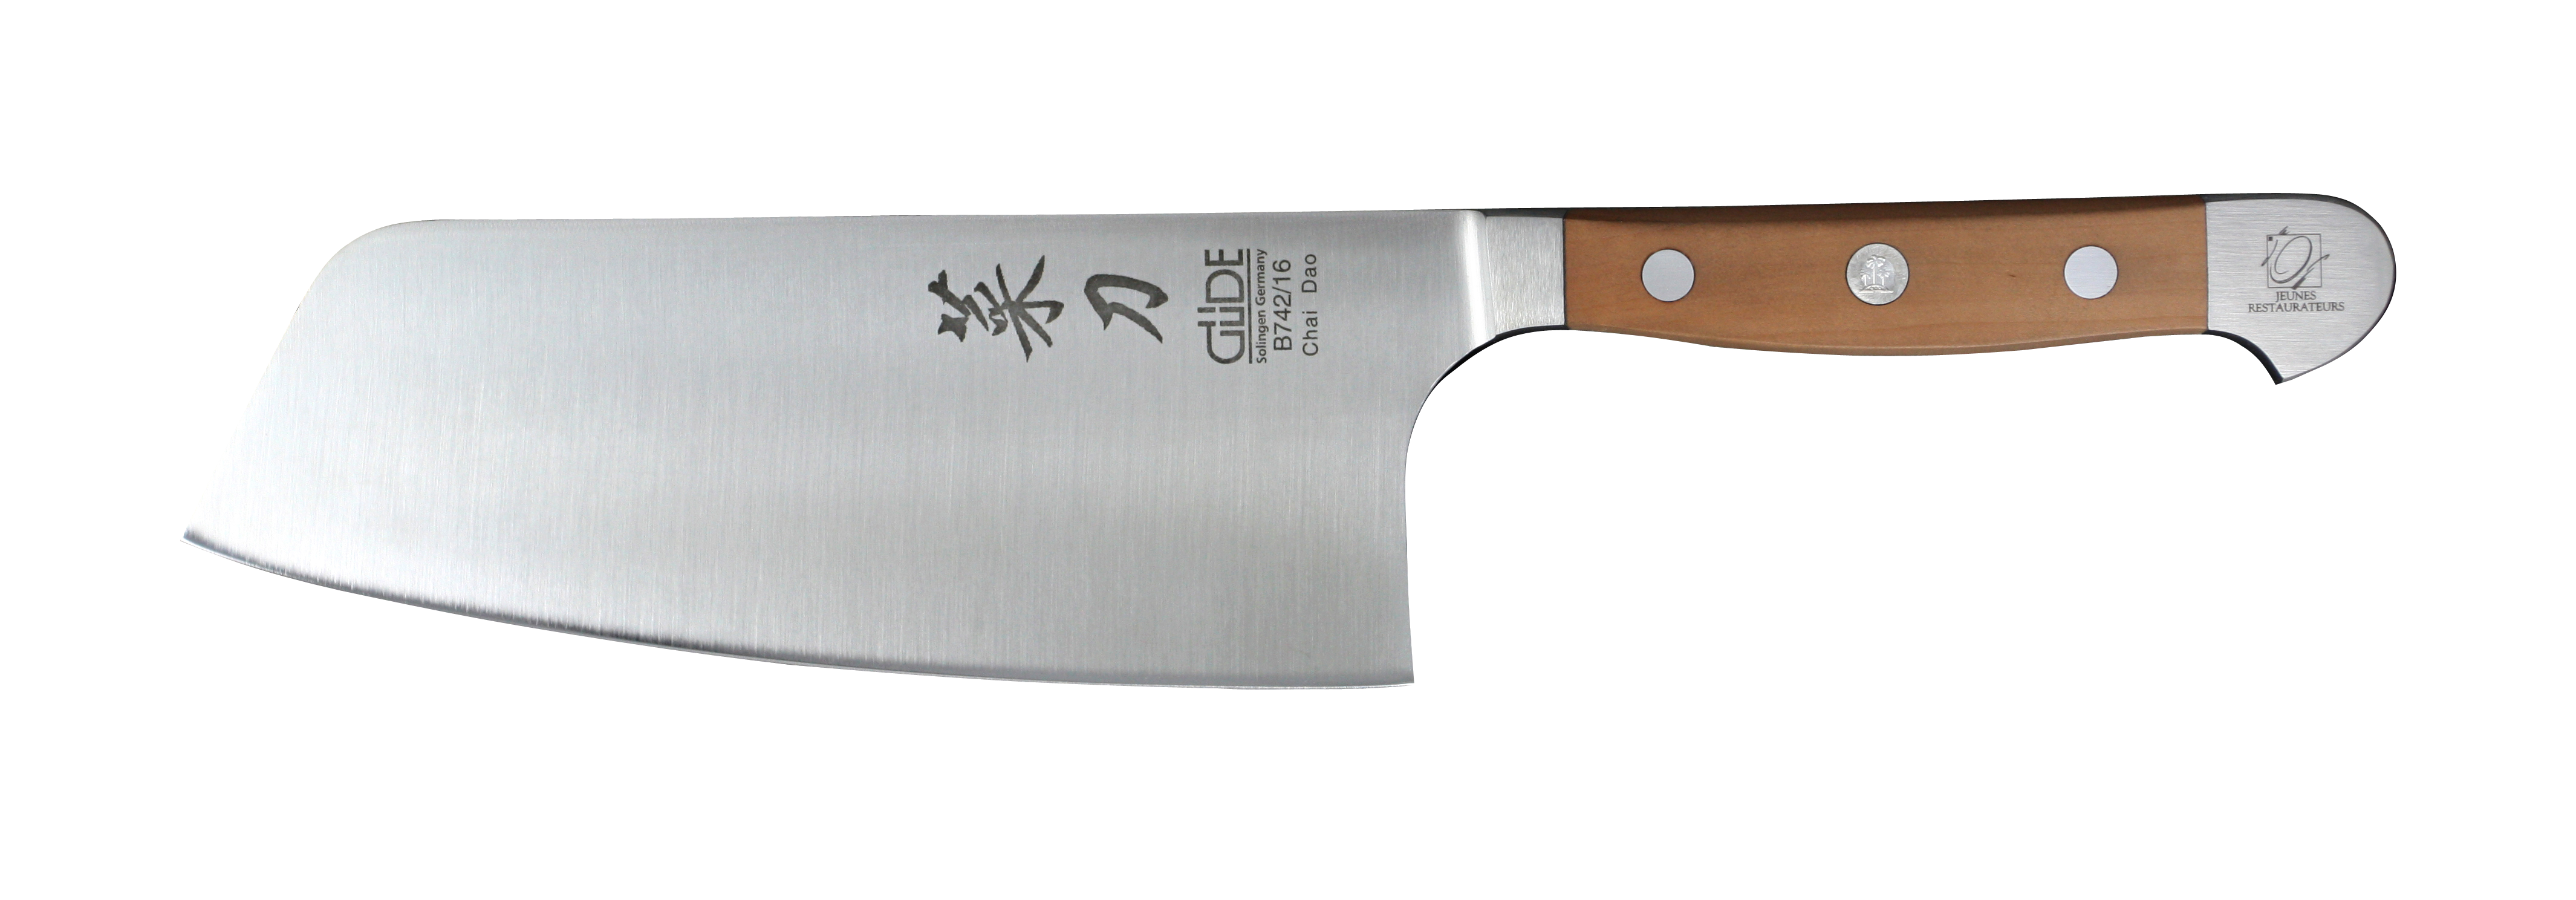 Güde Alpha Birne Chai Dao Messer 16 cm / CVM-Messerstahl mit Griffschalen aus Birnenholz